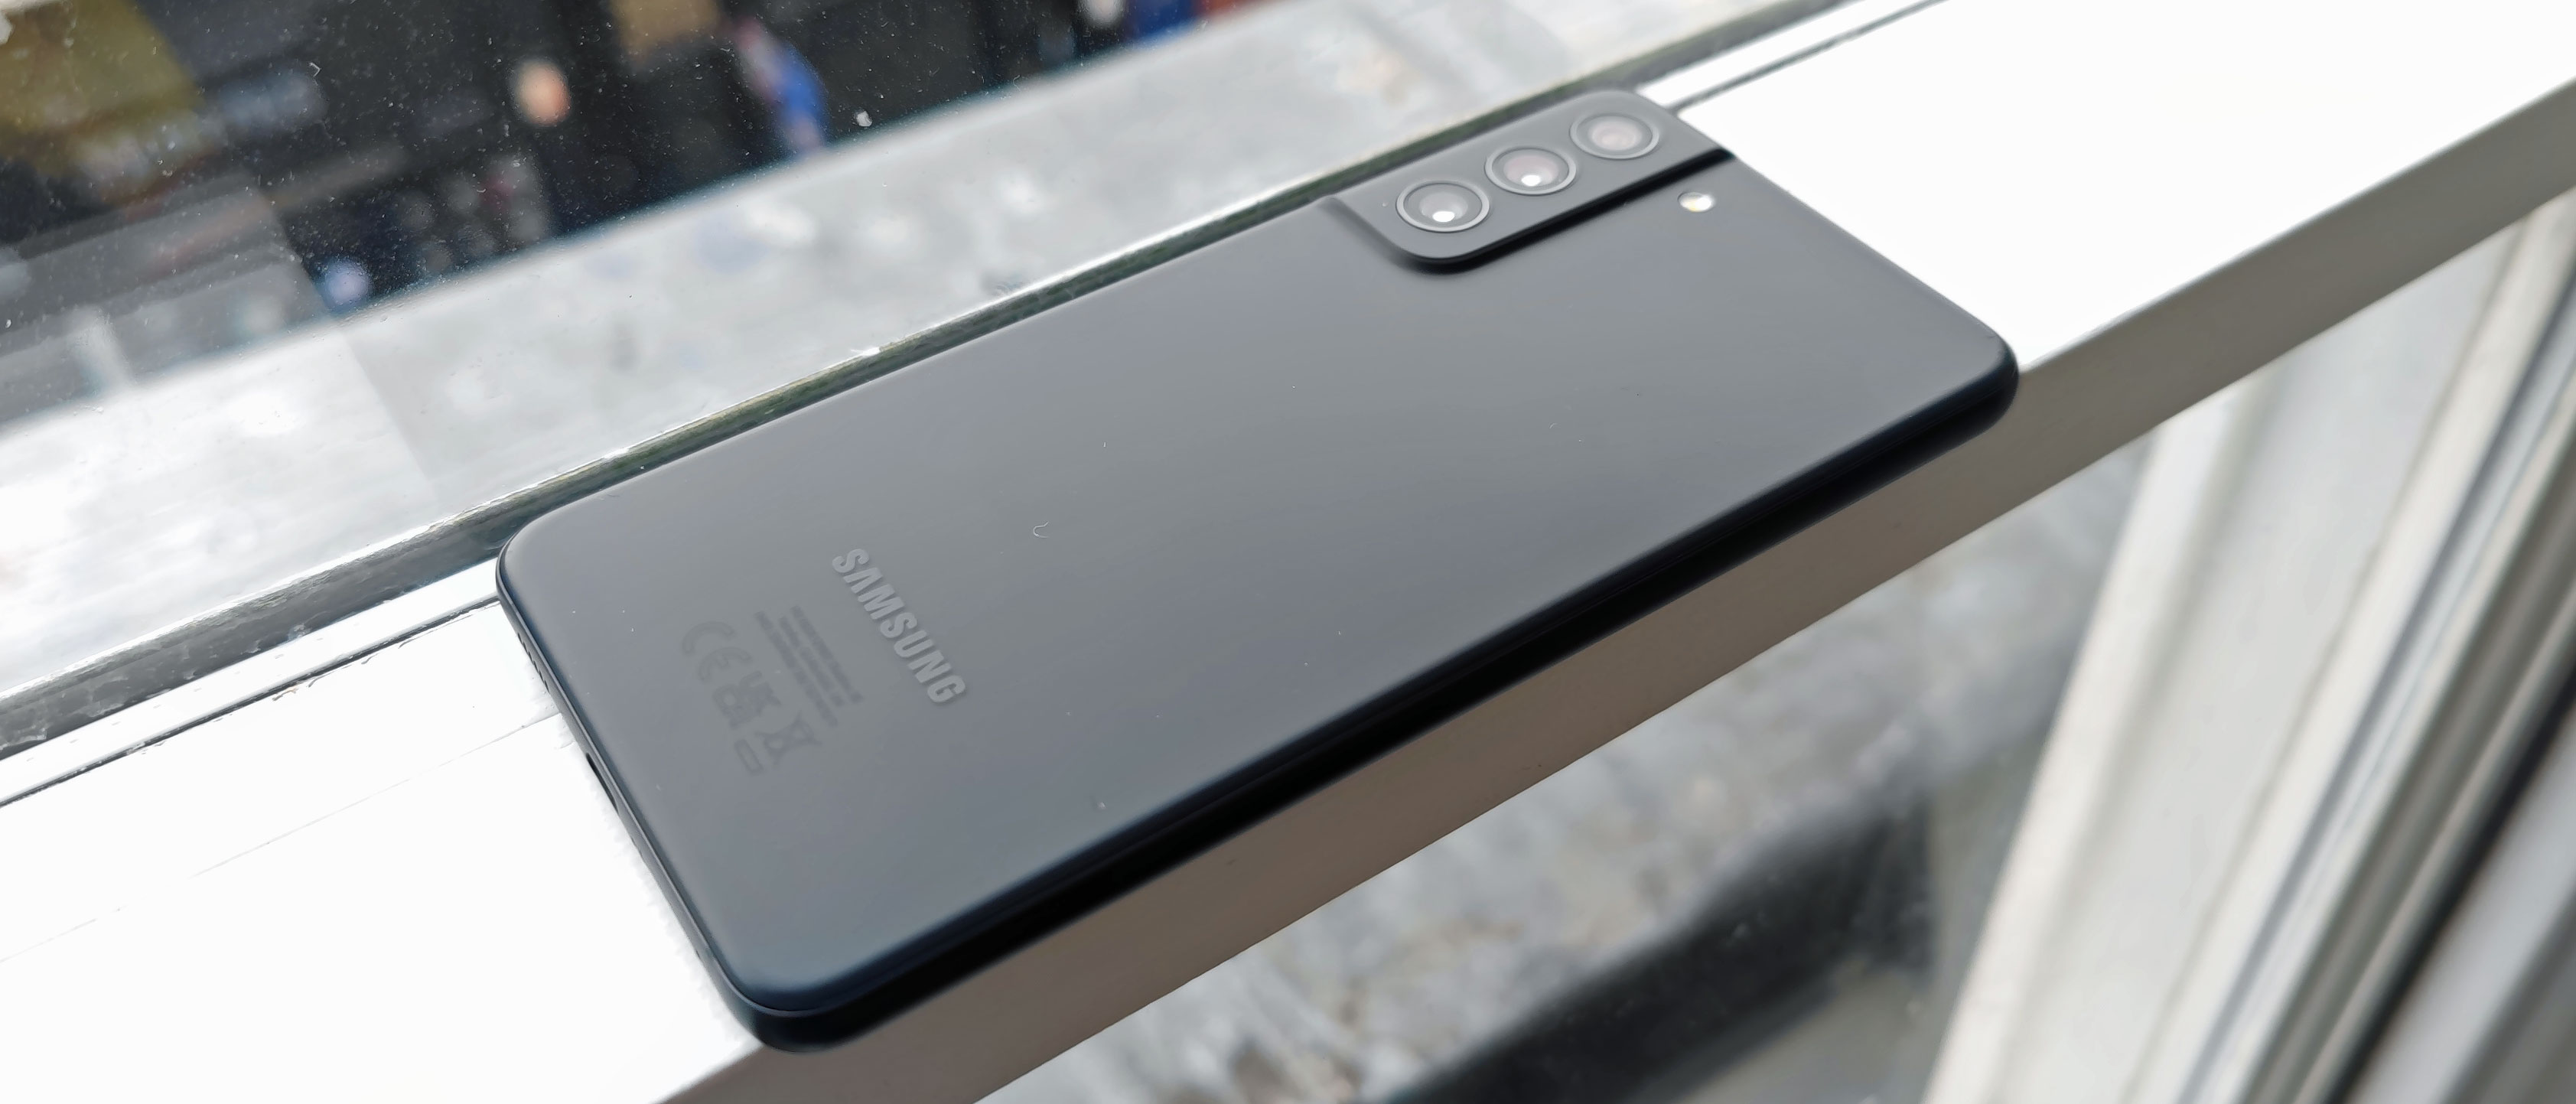 Samsung Galaxy S21 FE được đánh giá rất cao bởi cộng đồng smartphone. Nhờ sự kết hợp tuyệt vời giữa thiết kế, phần cứng và tính năng, S21 FE là một chiếc điện thoại đáng để sở hữu. Hãy xem đánh giá để biết thêm thông tin về sản phẩm này.